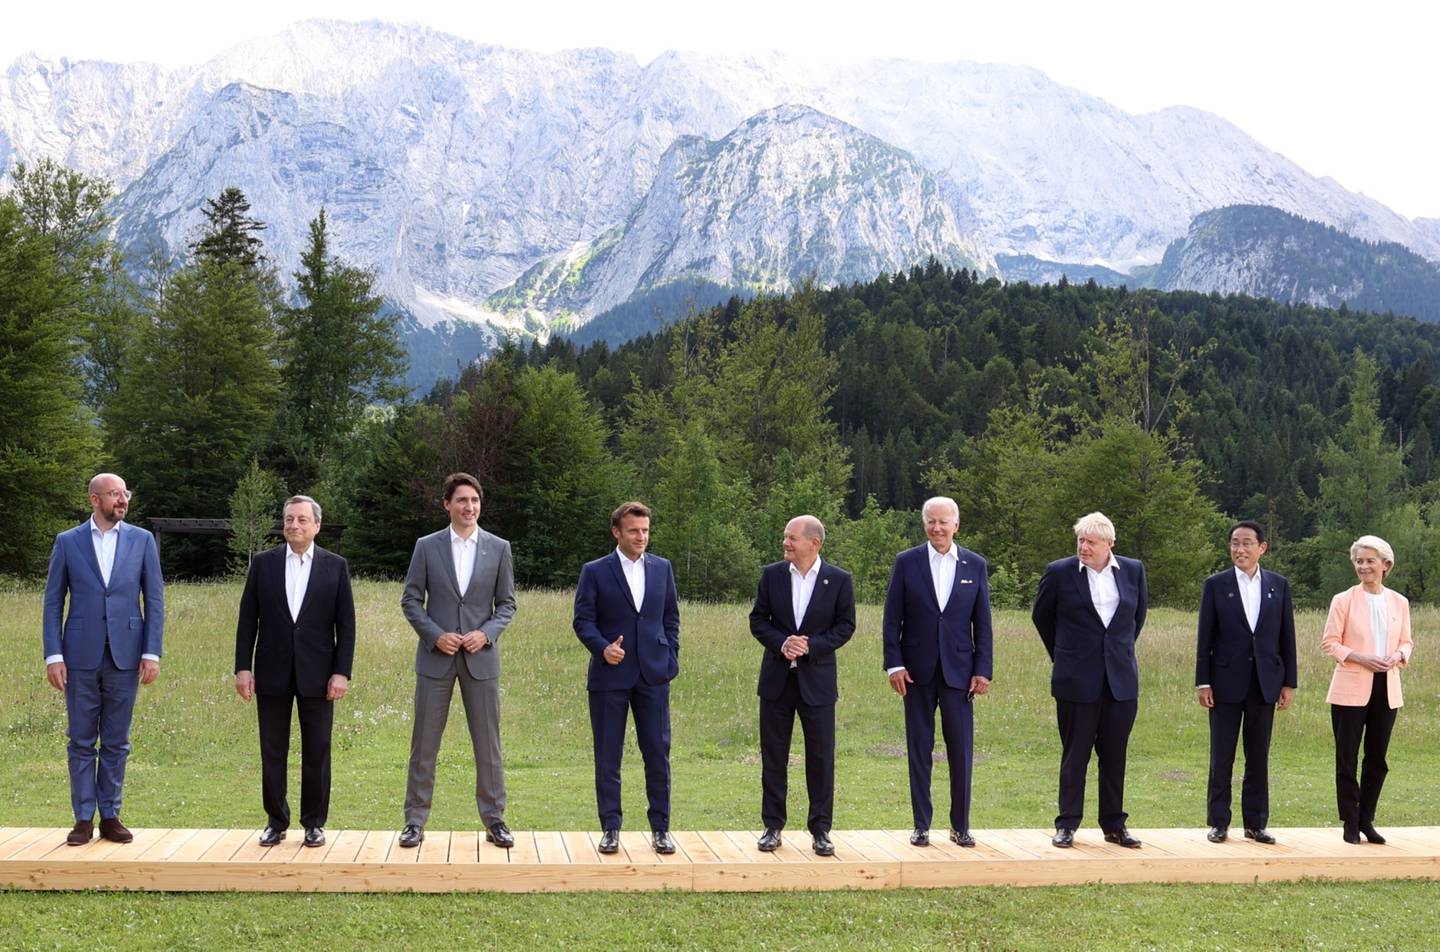 La foto de familia de los líderes del G7 en Alemania